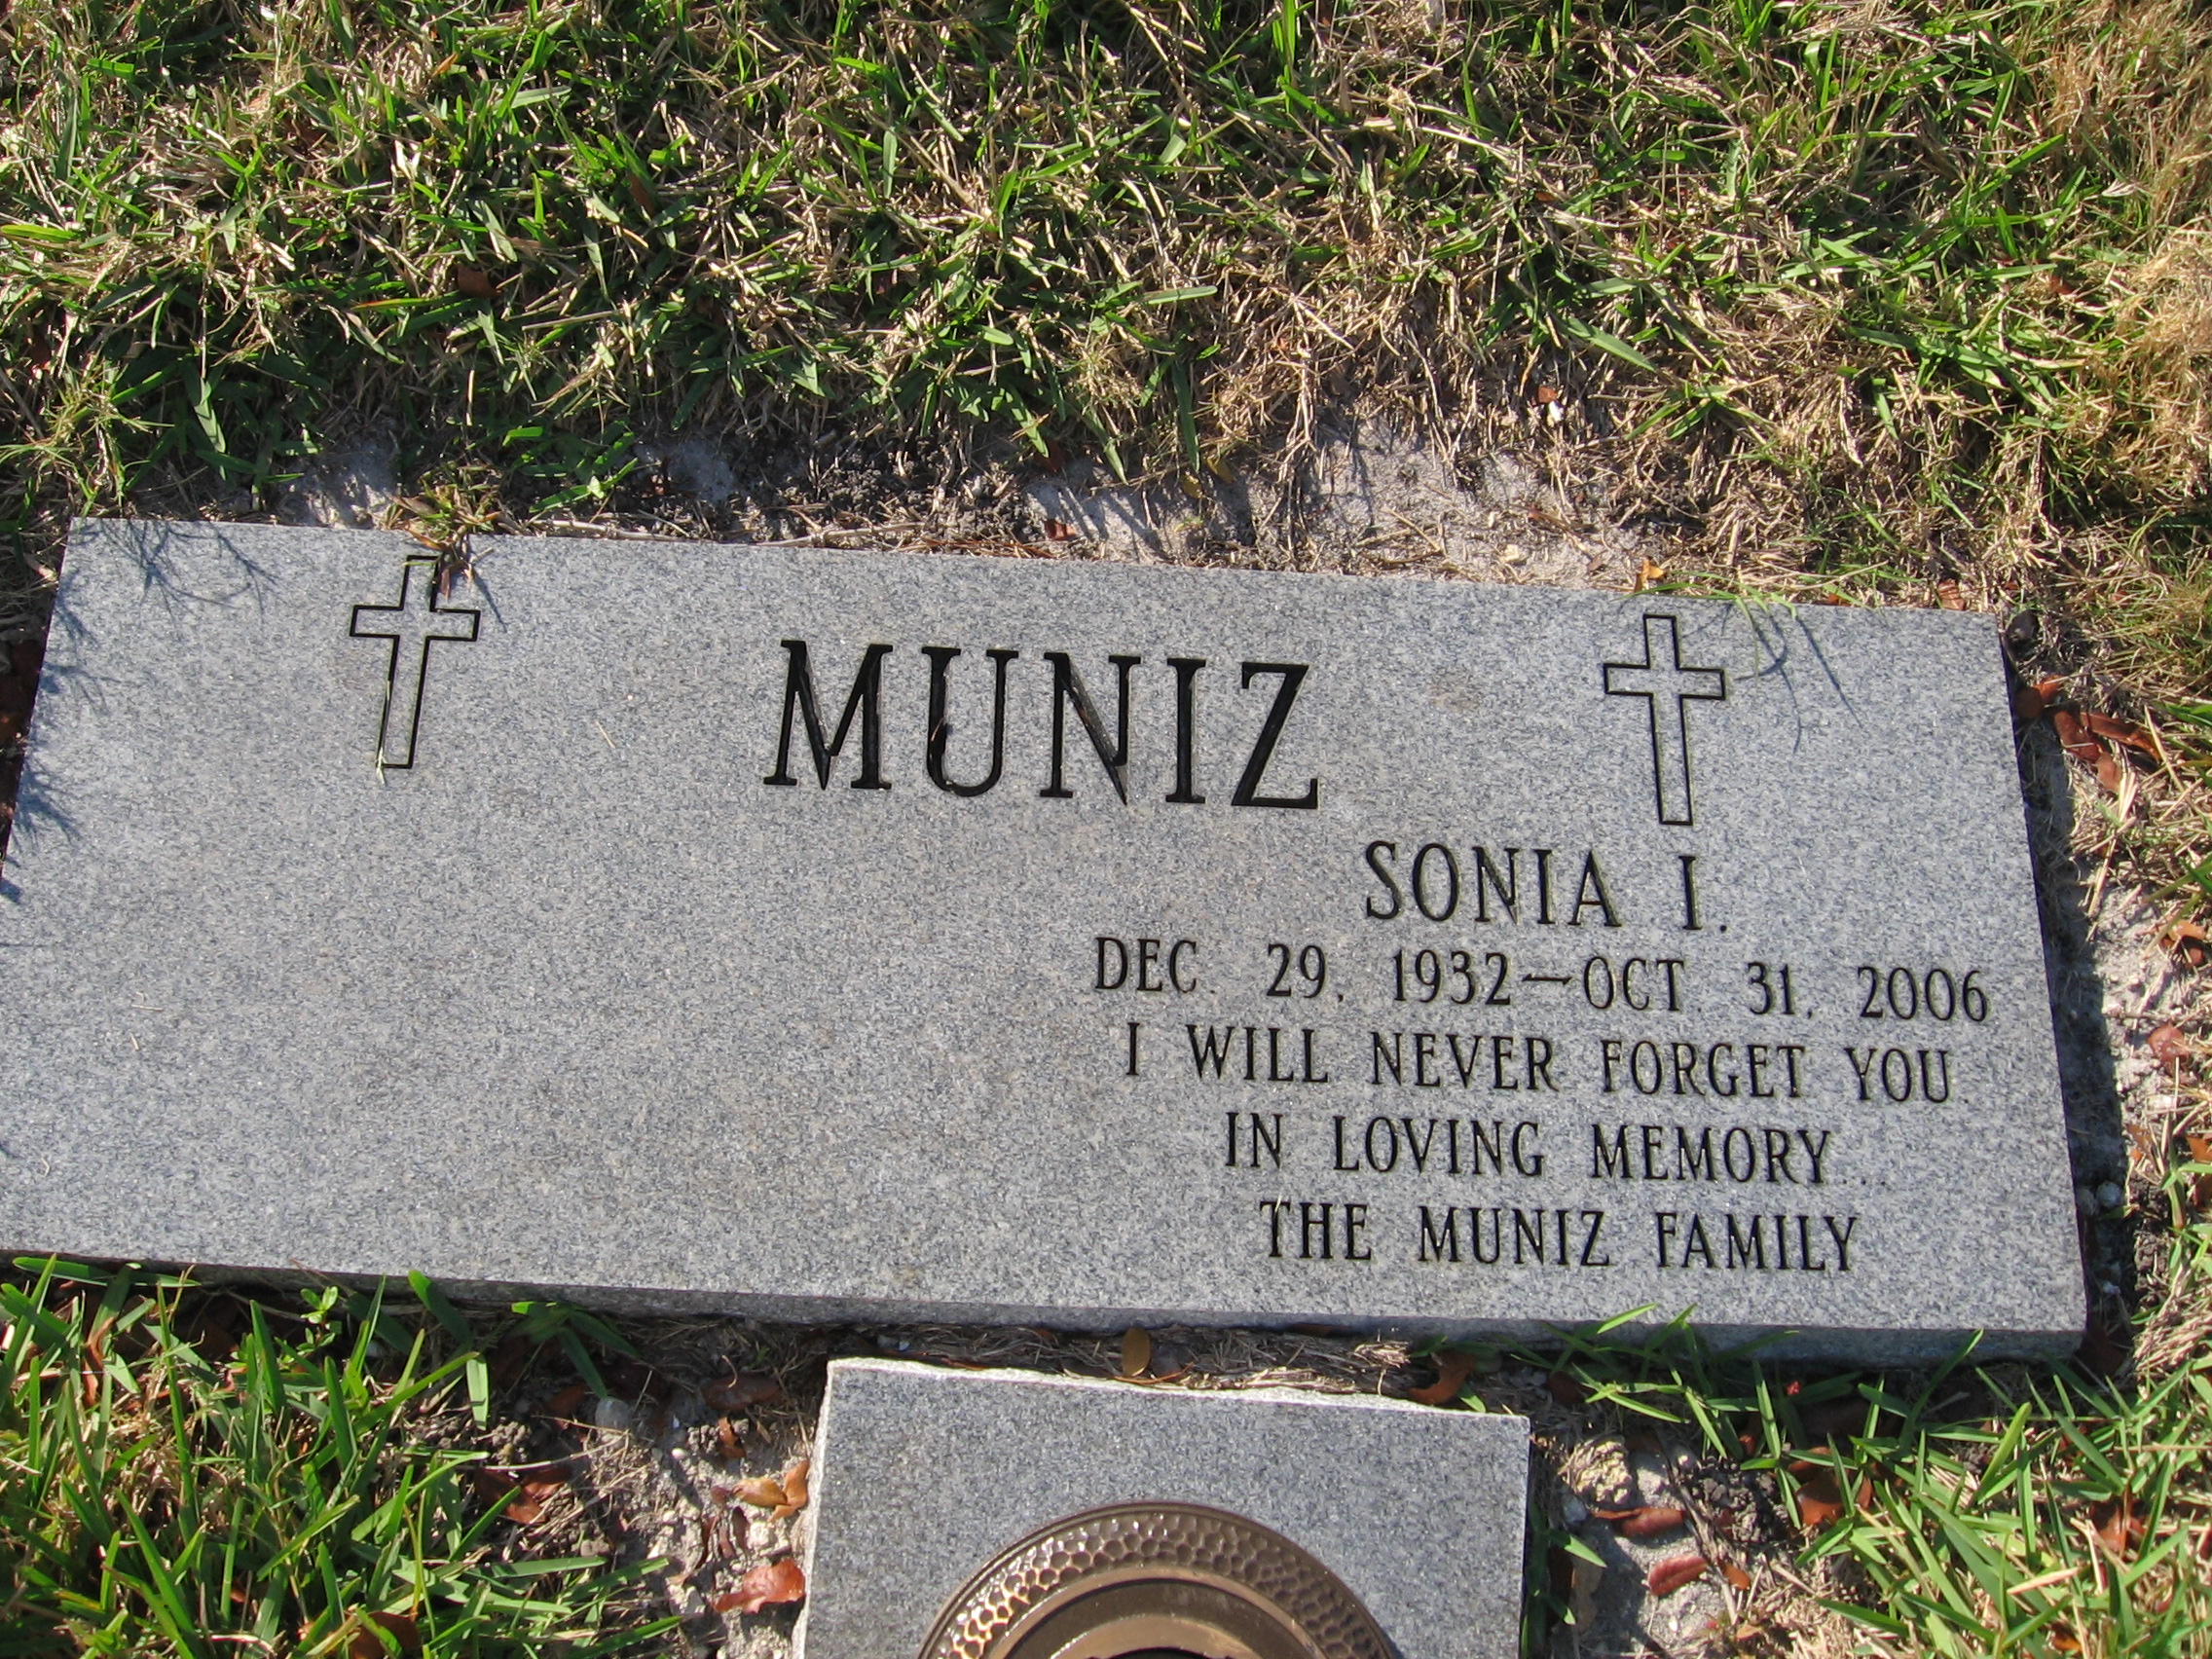 Sonia I Muniz